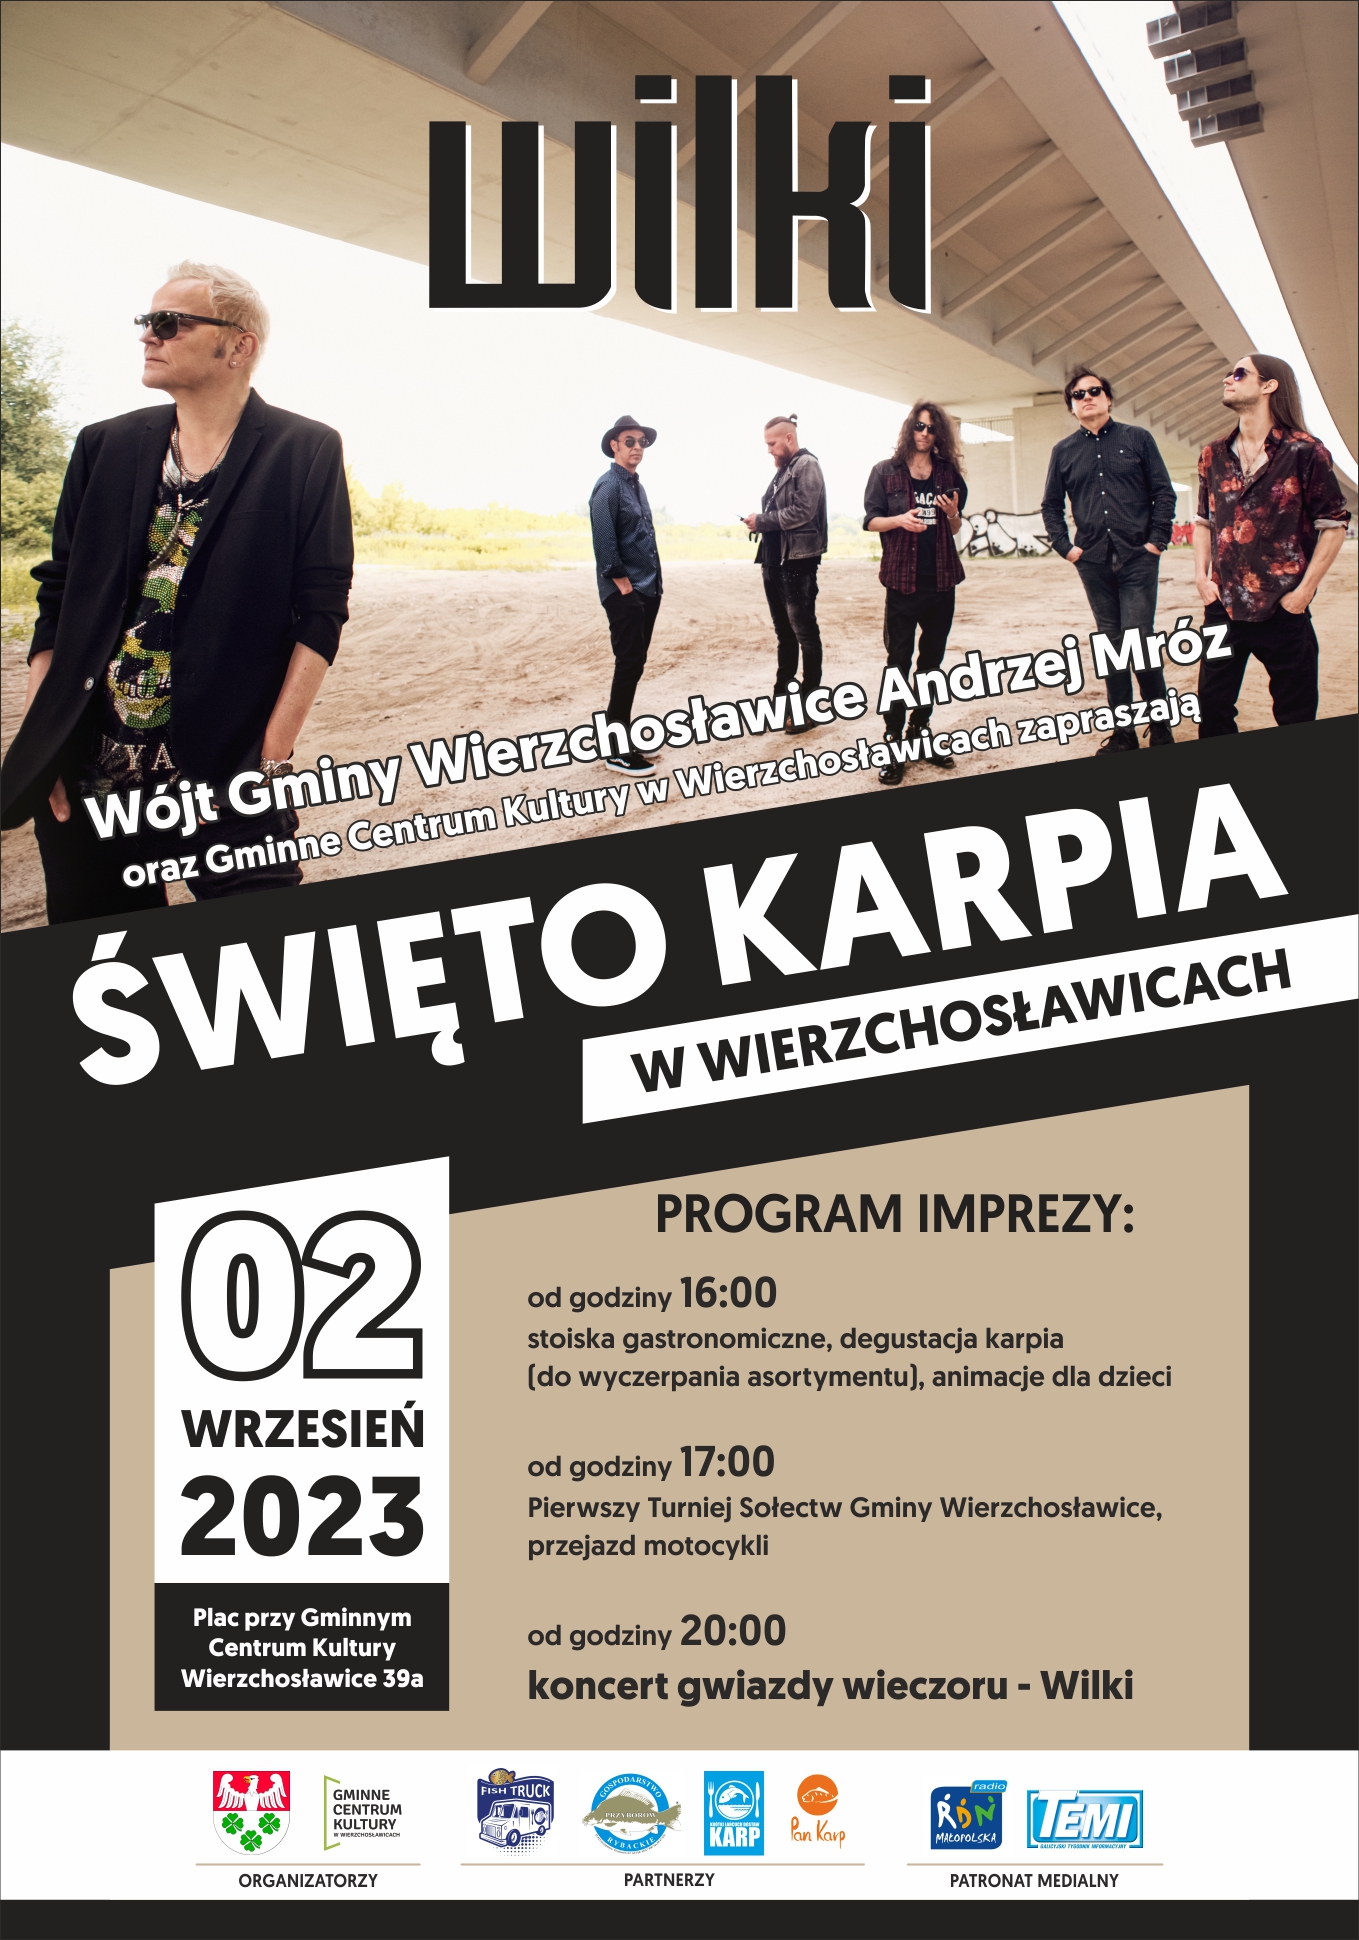 Plakat informujący o Święcie Karpia w Wierzchosławicach.